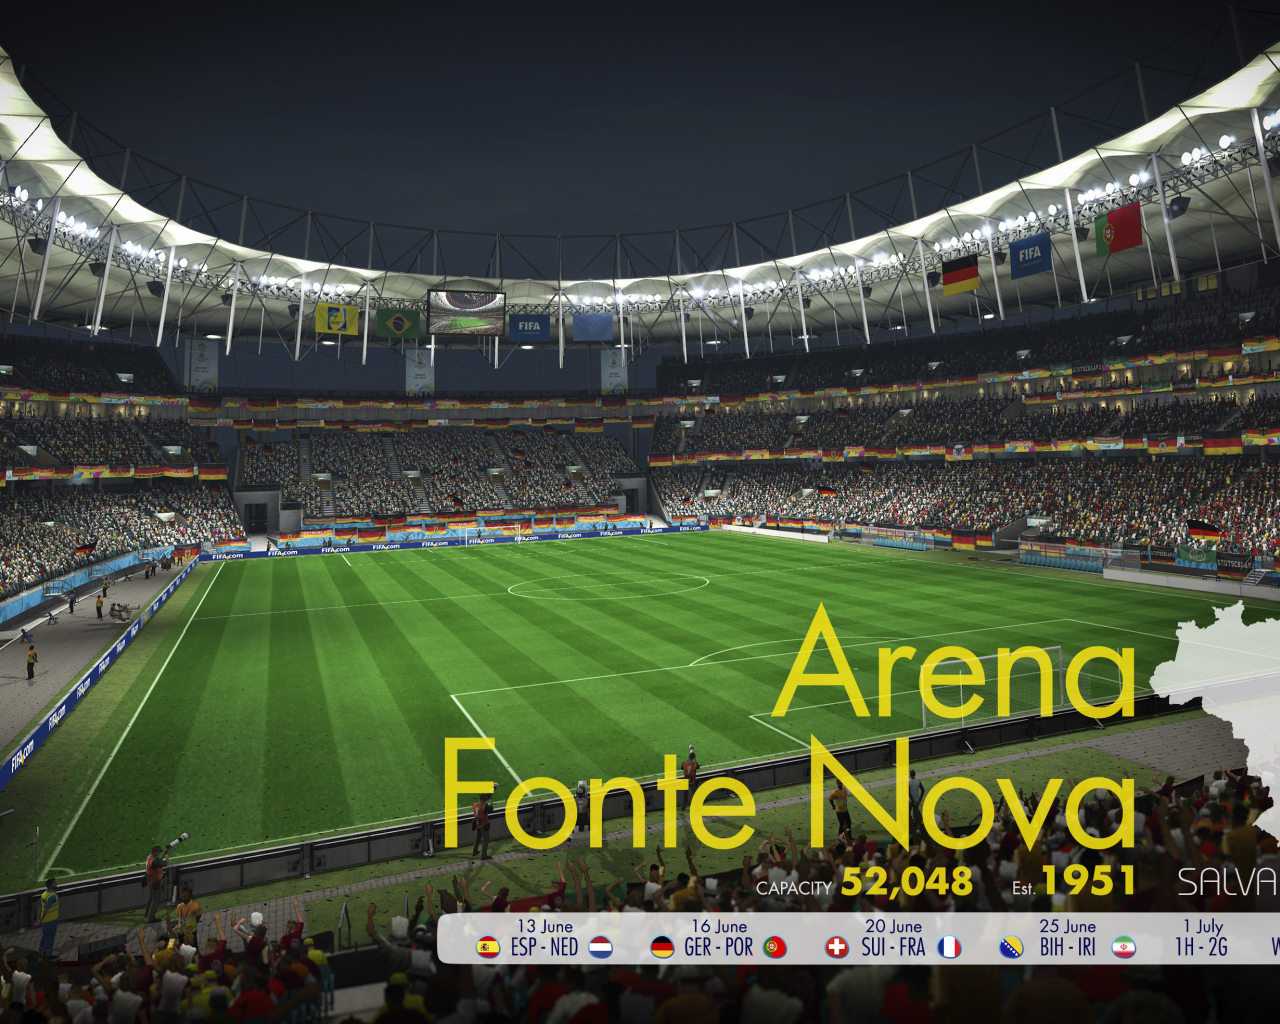 Арена Фонте Нова на Чемпионате мира по футболу в Бразилии 2014